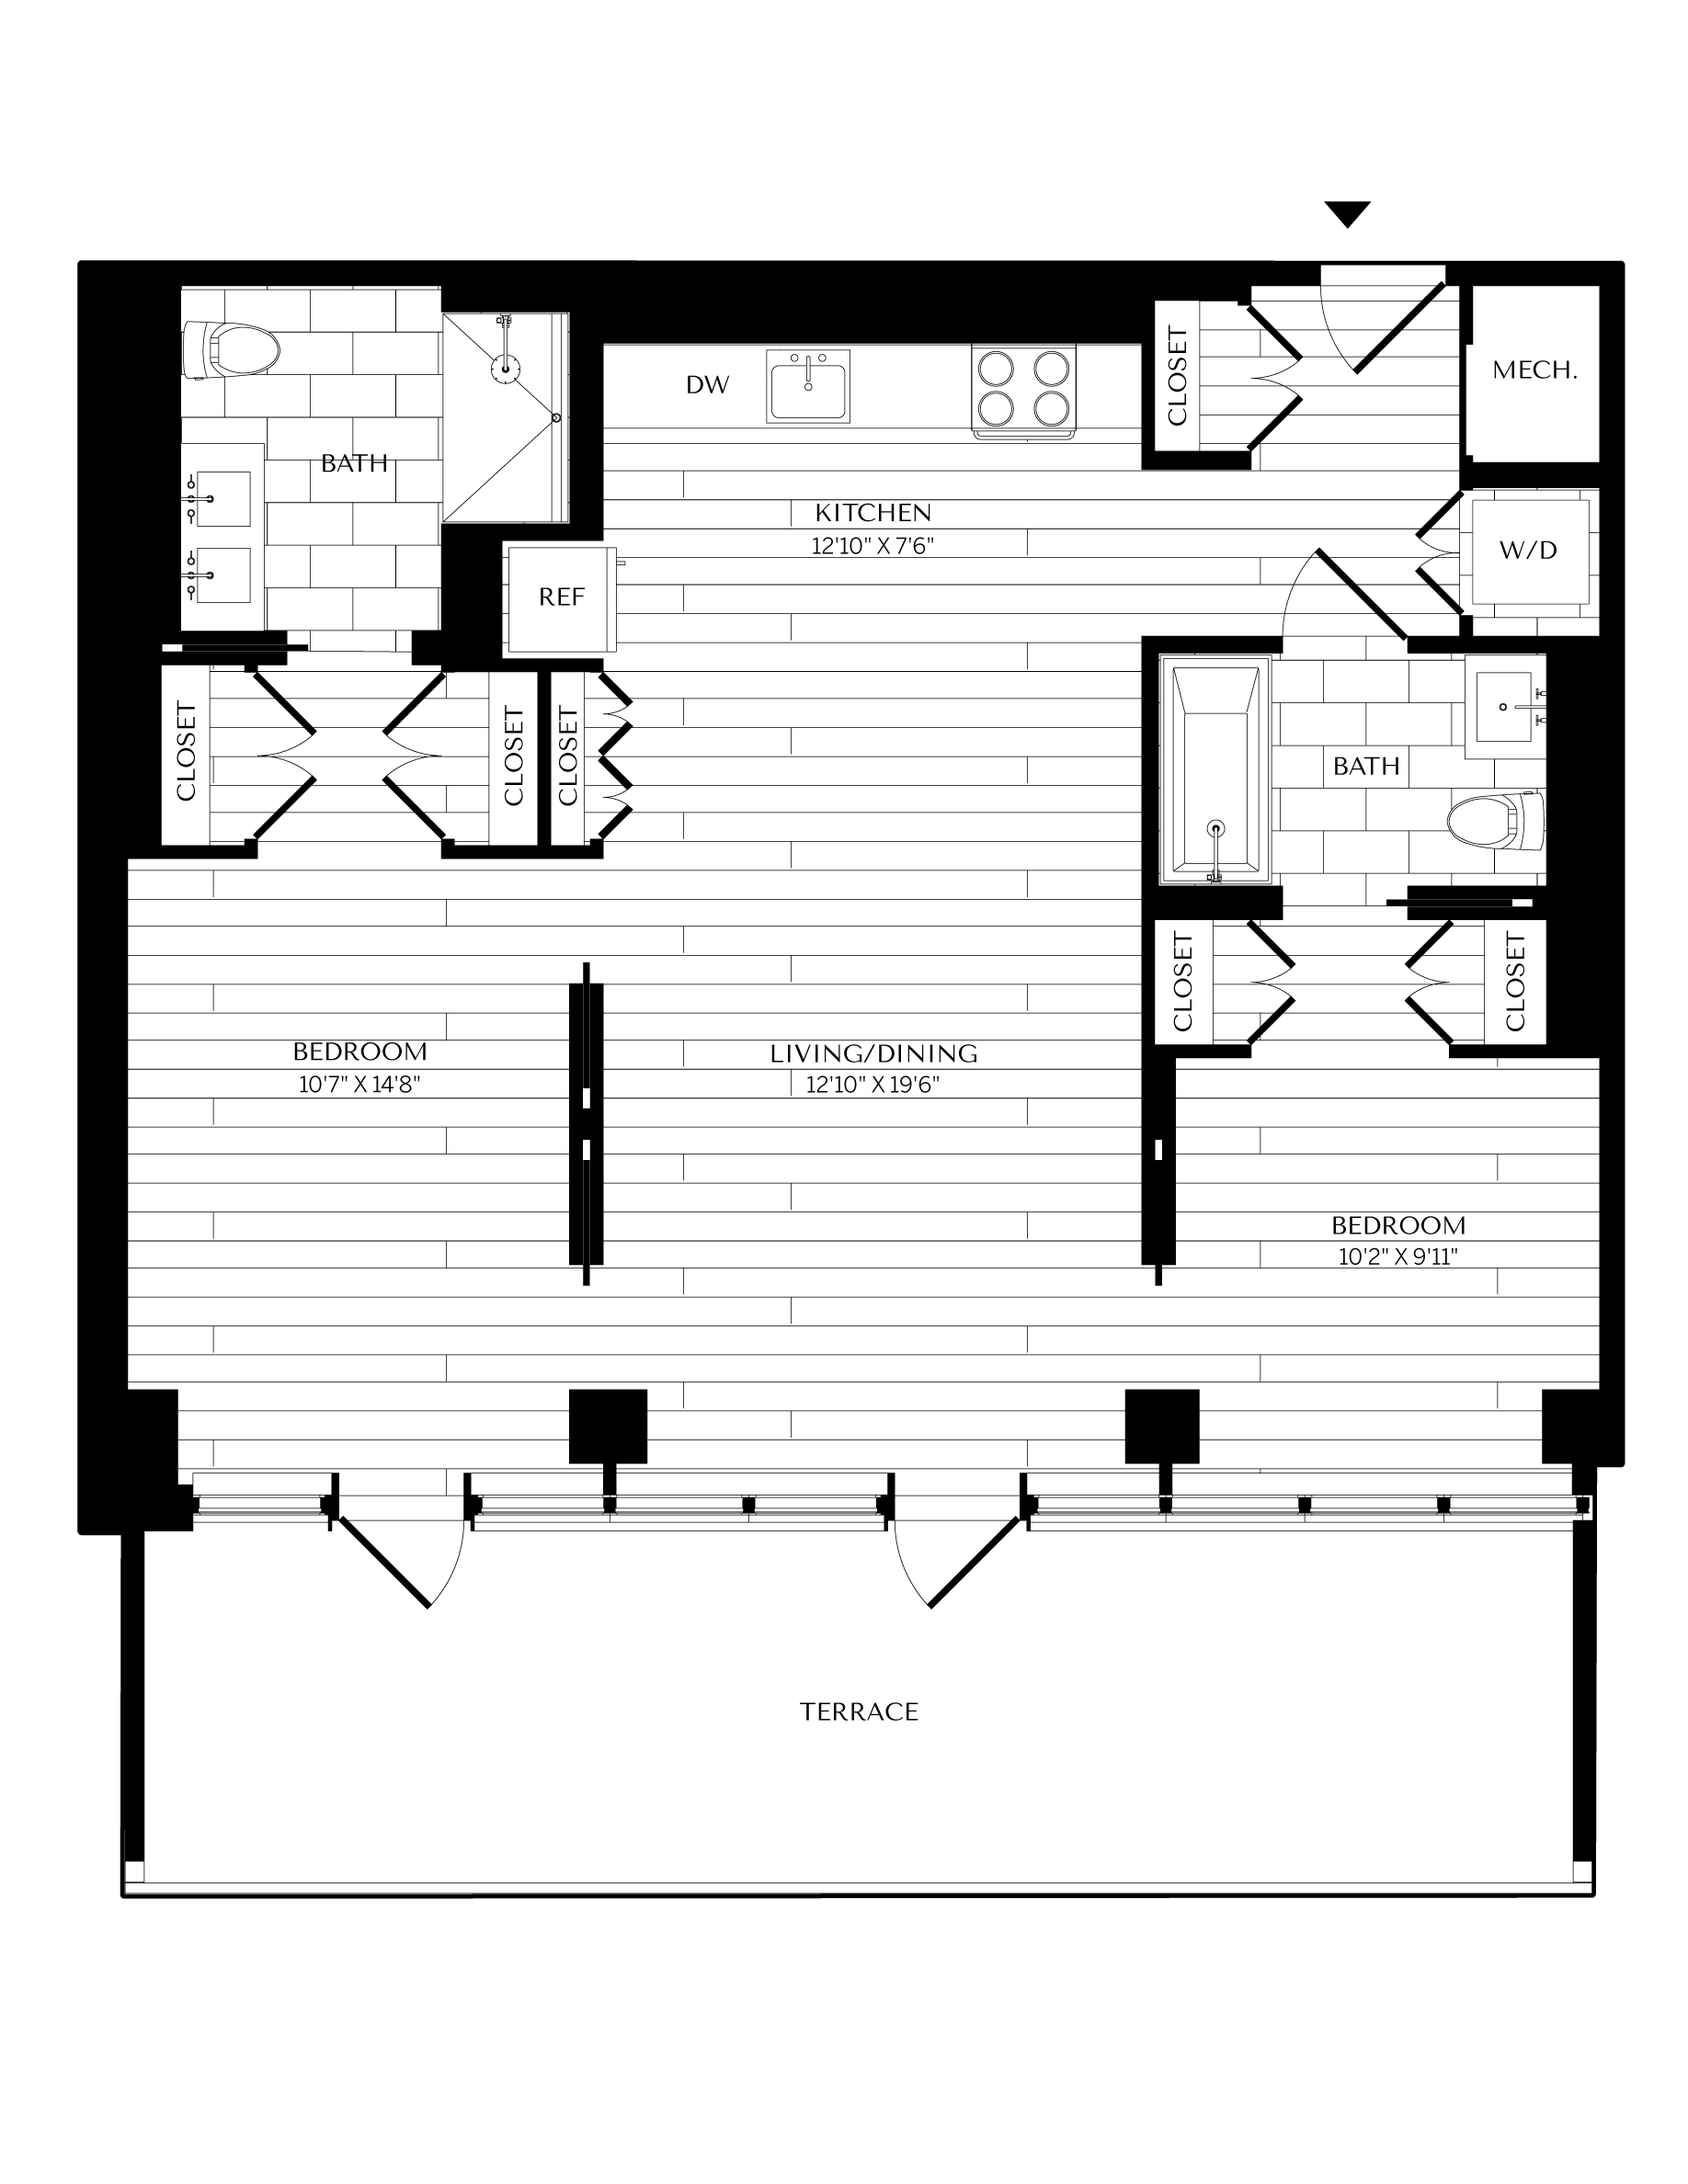 Floorplan image of unit 1201